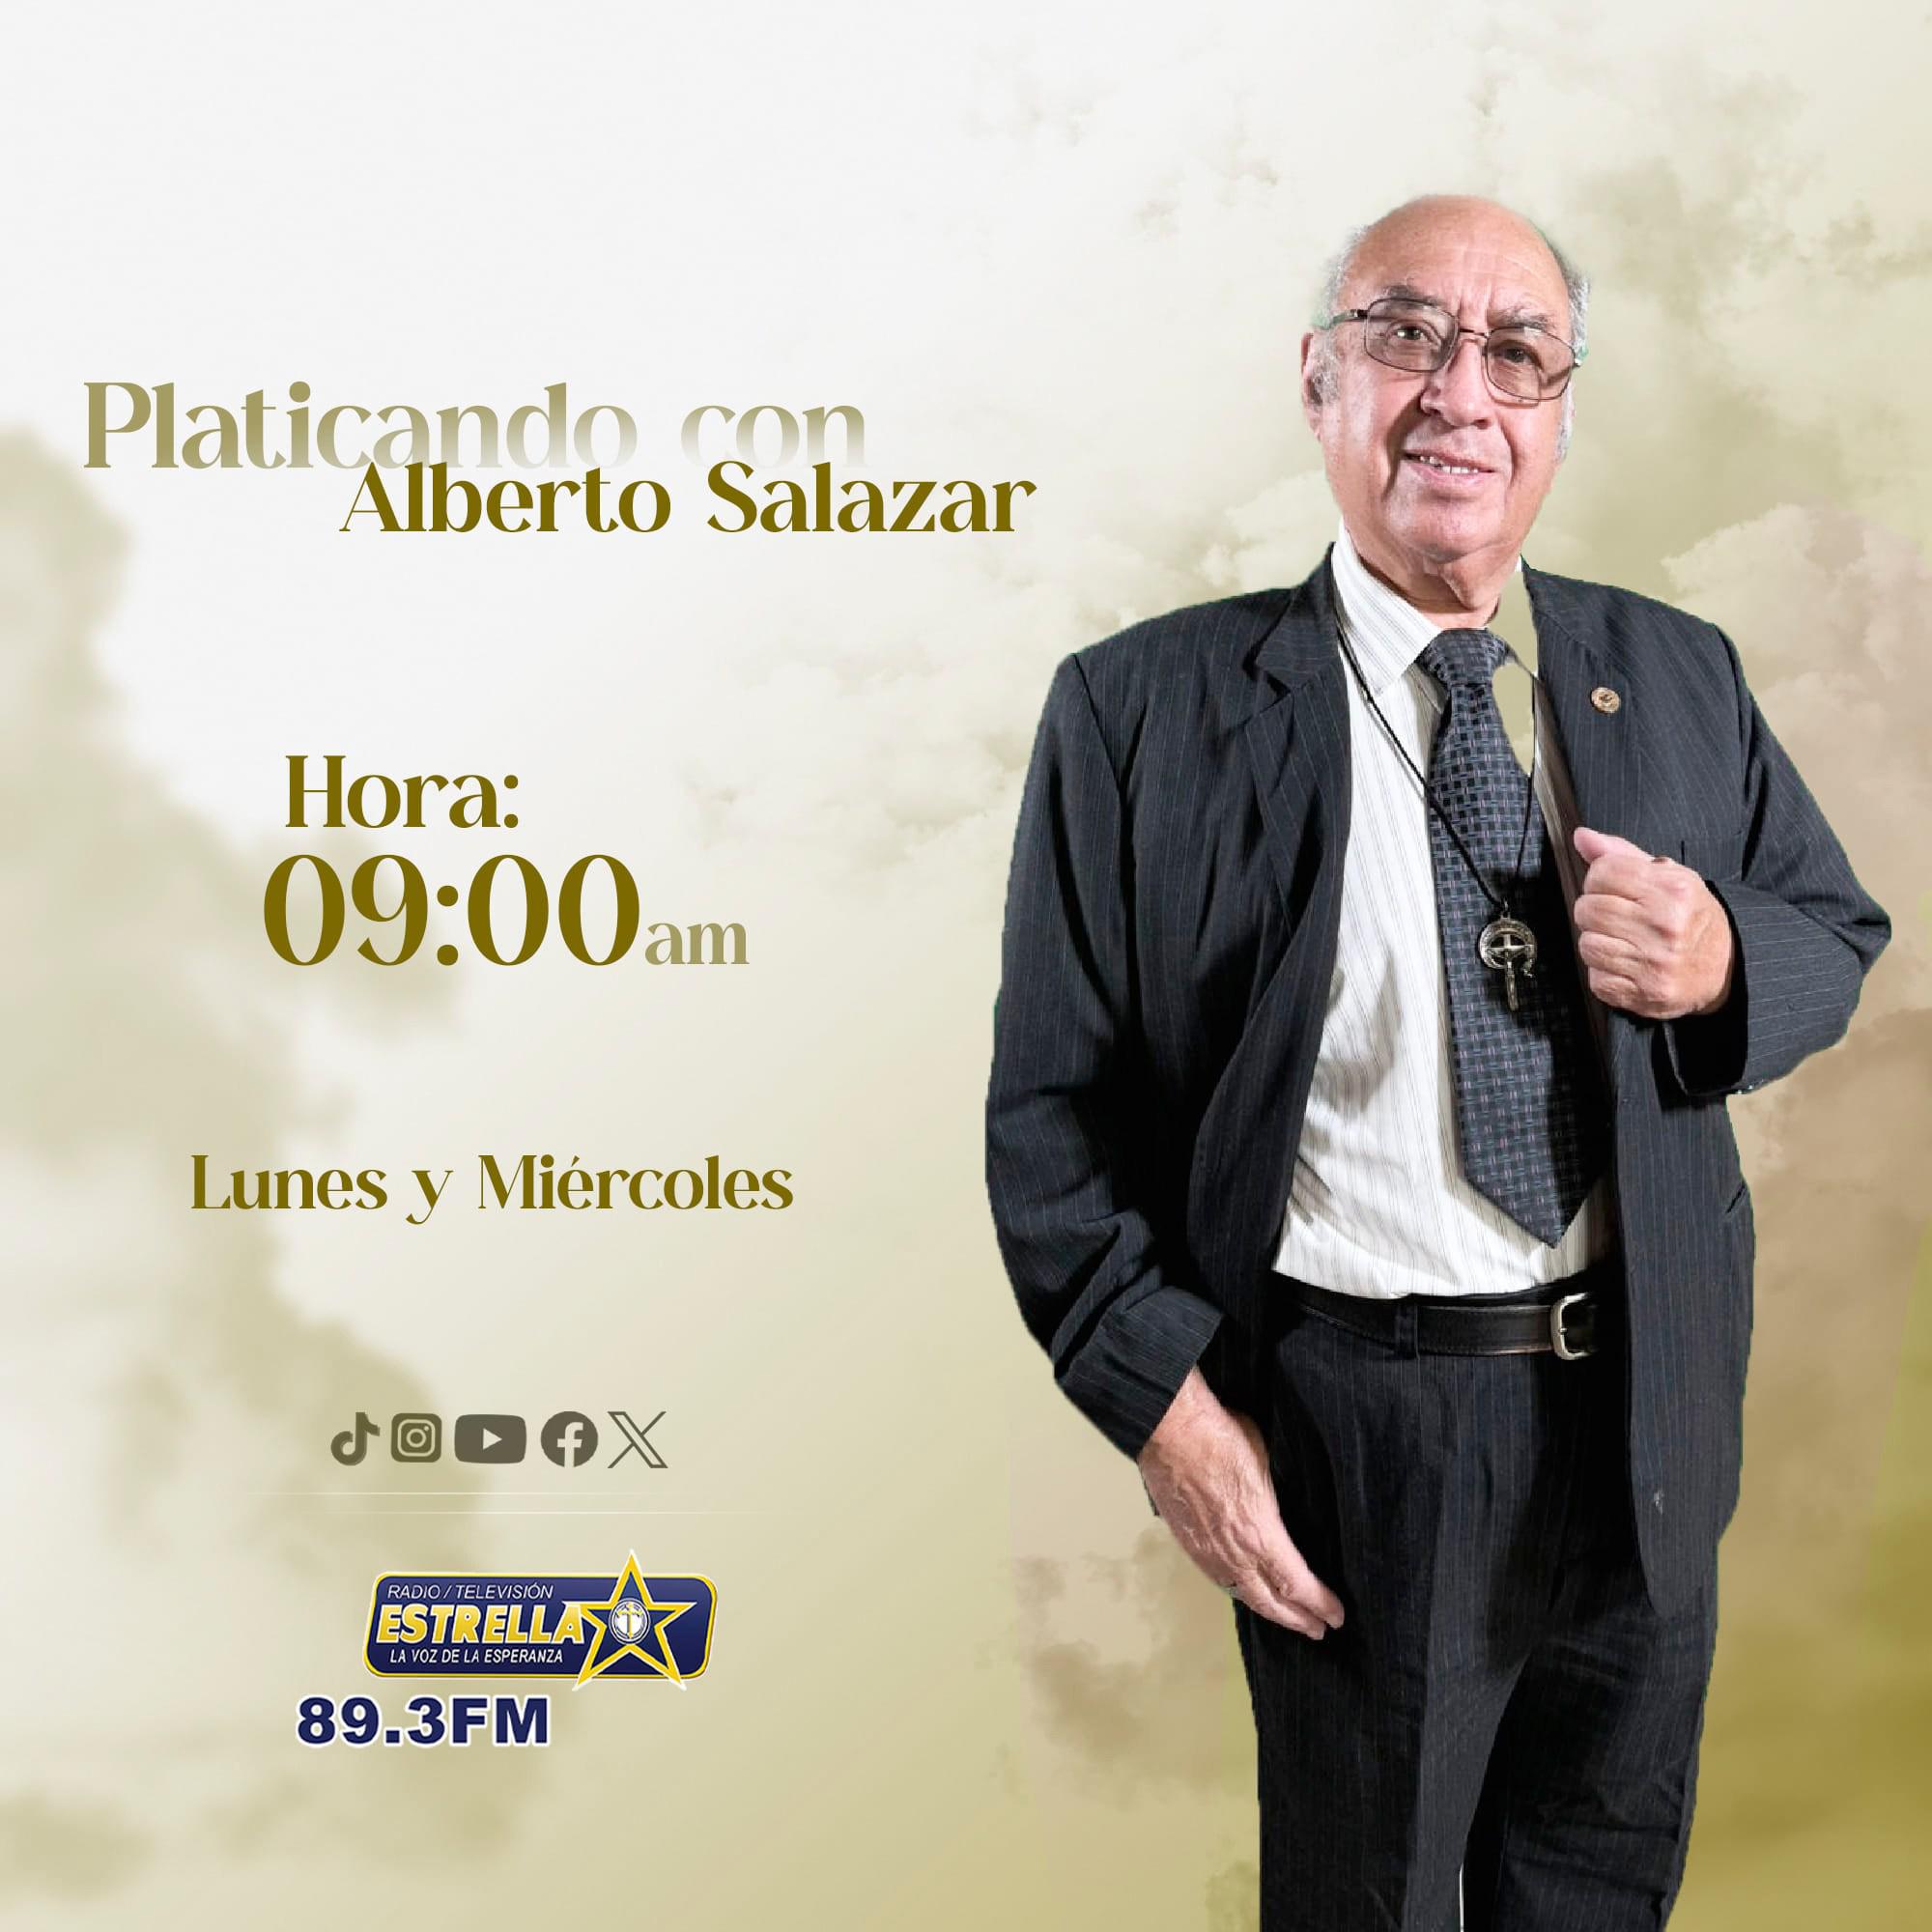 Platicando con Alberto Salazar